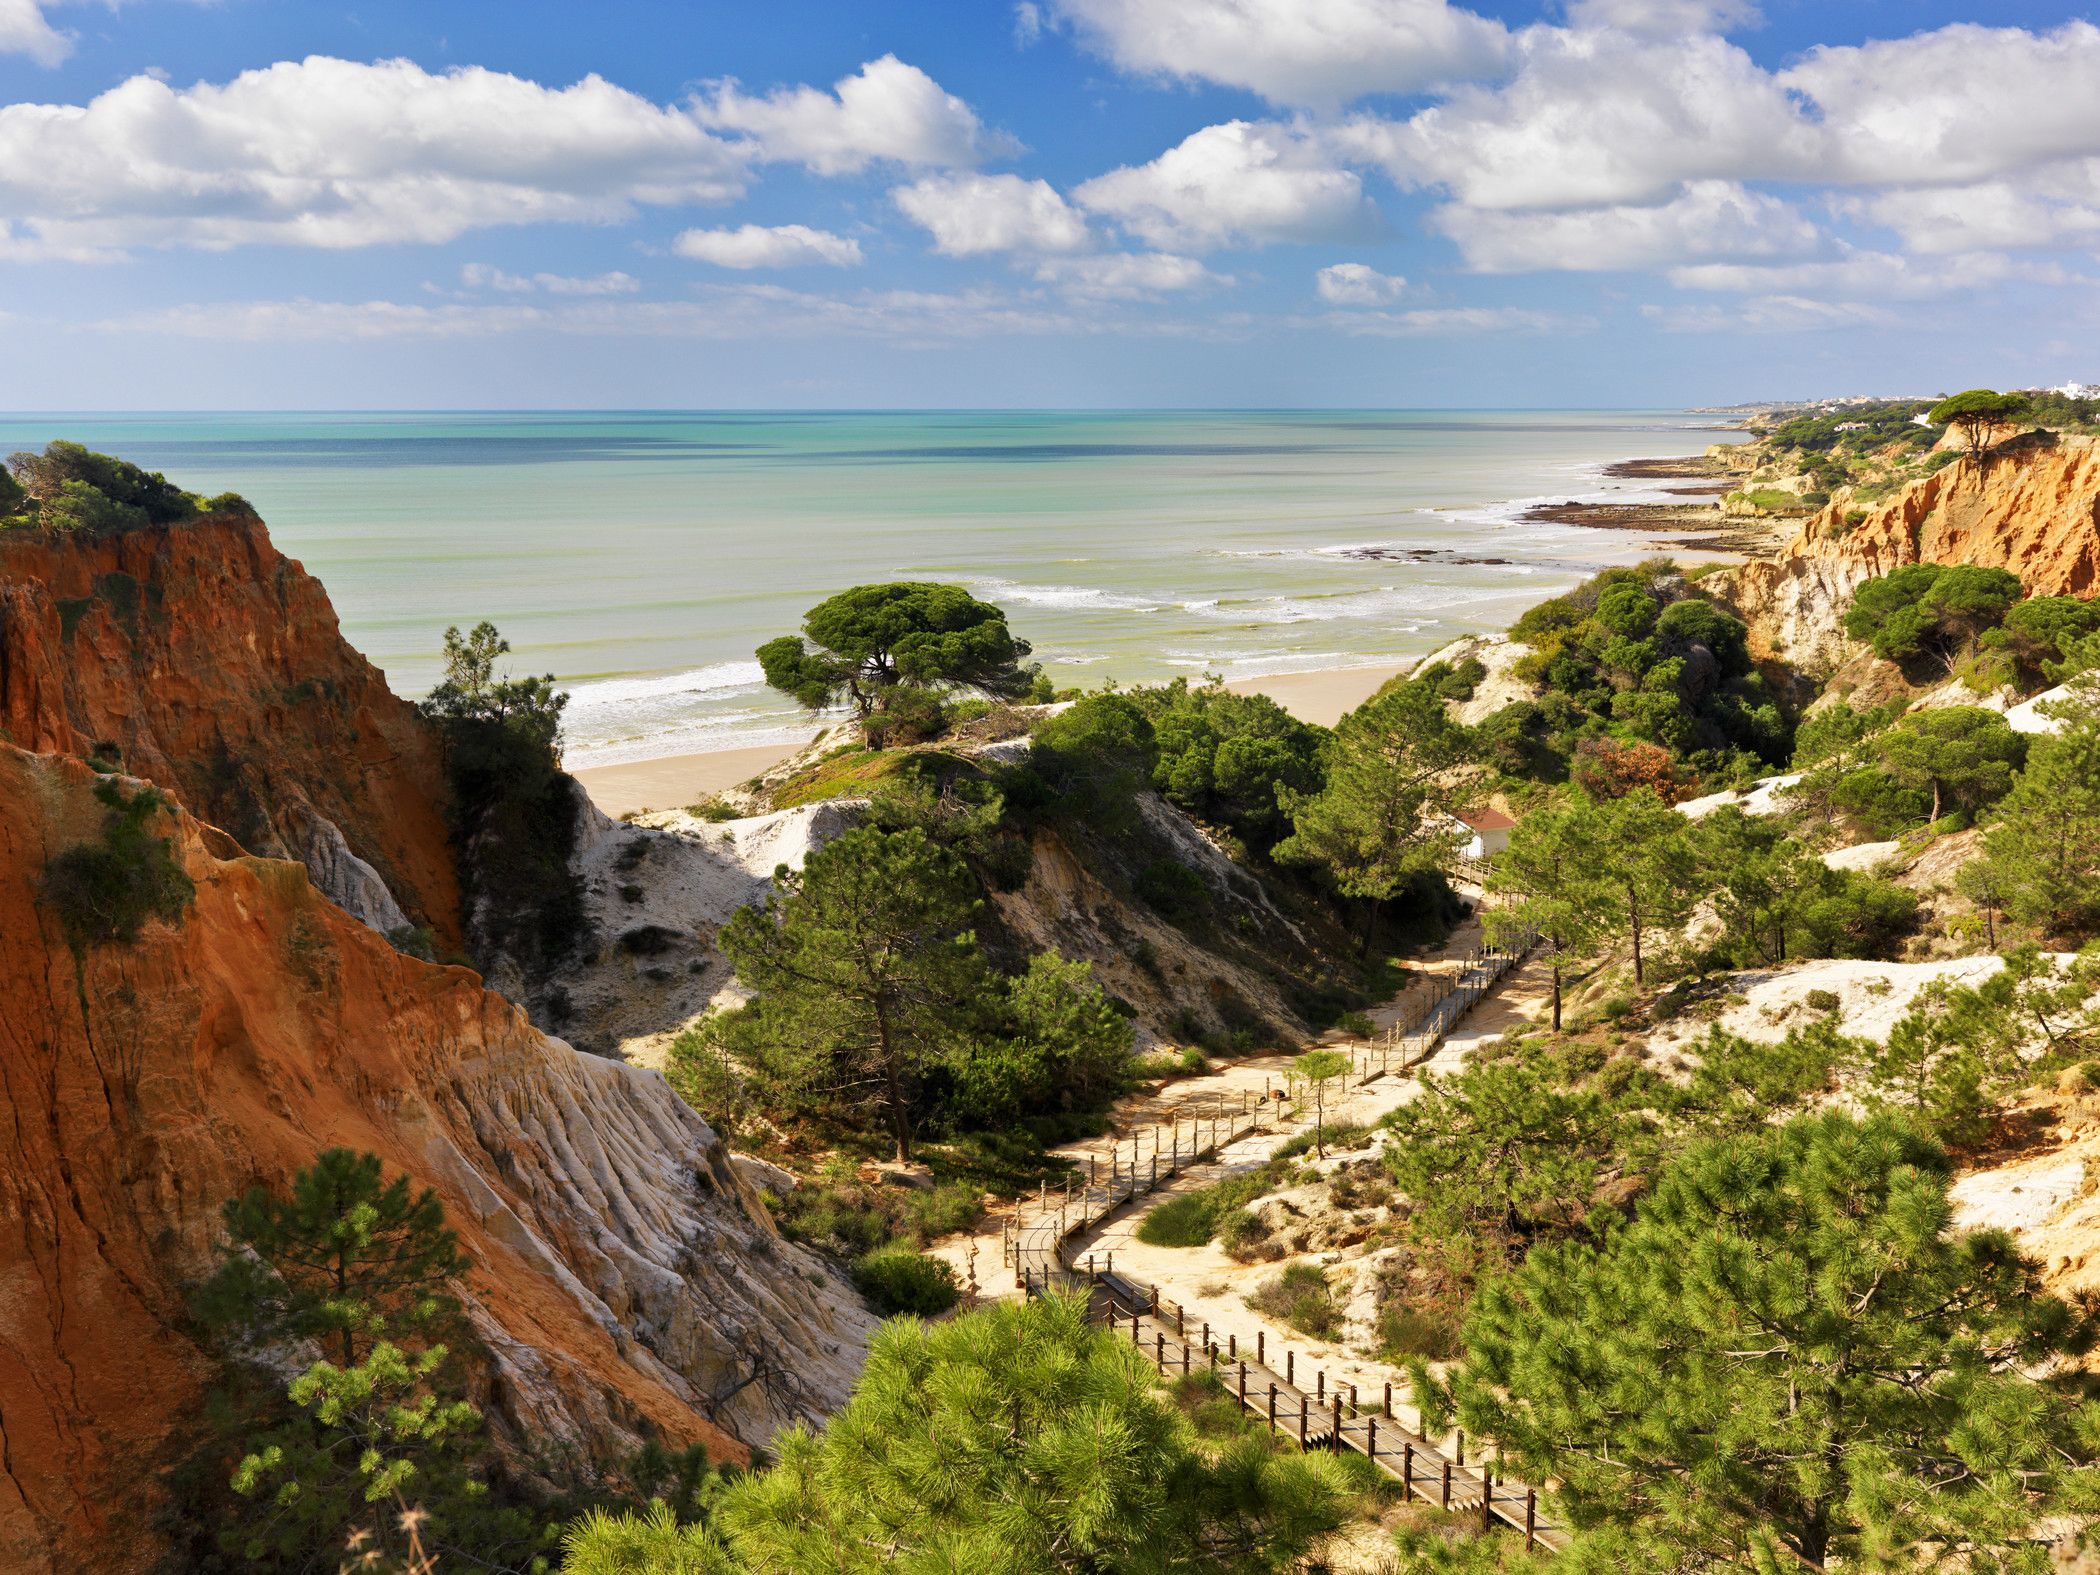 Eastern Algarve coastline